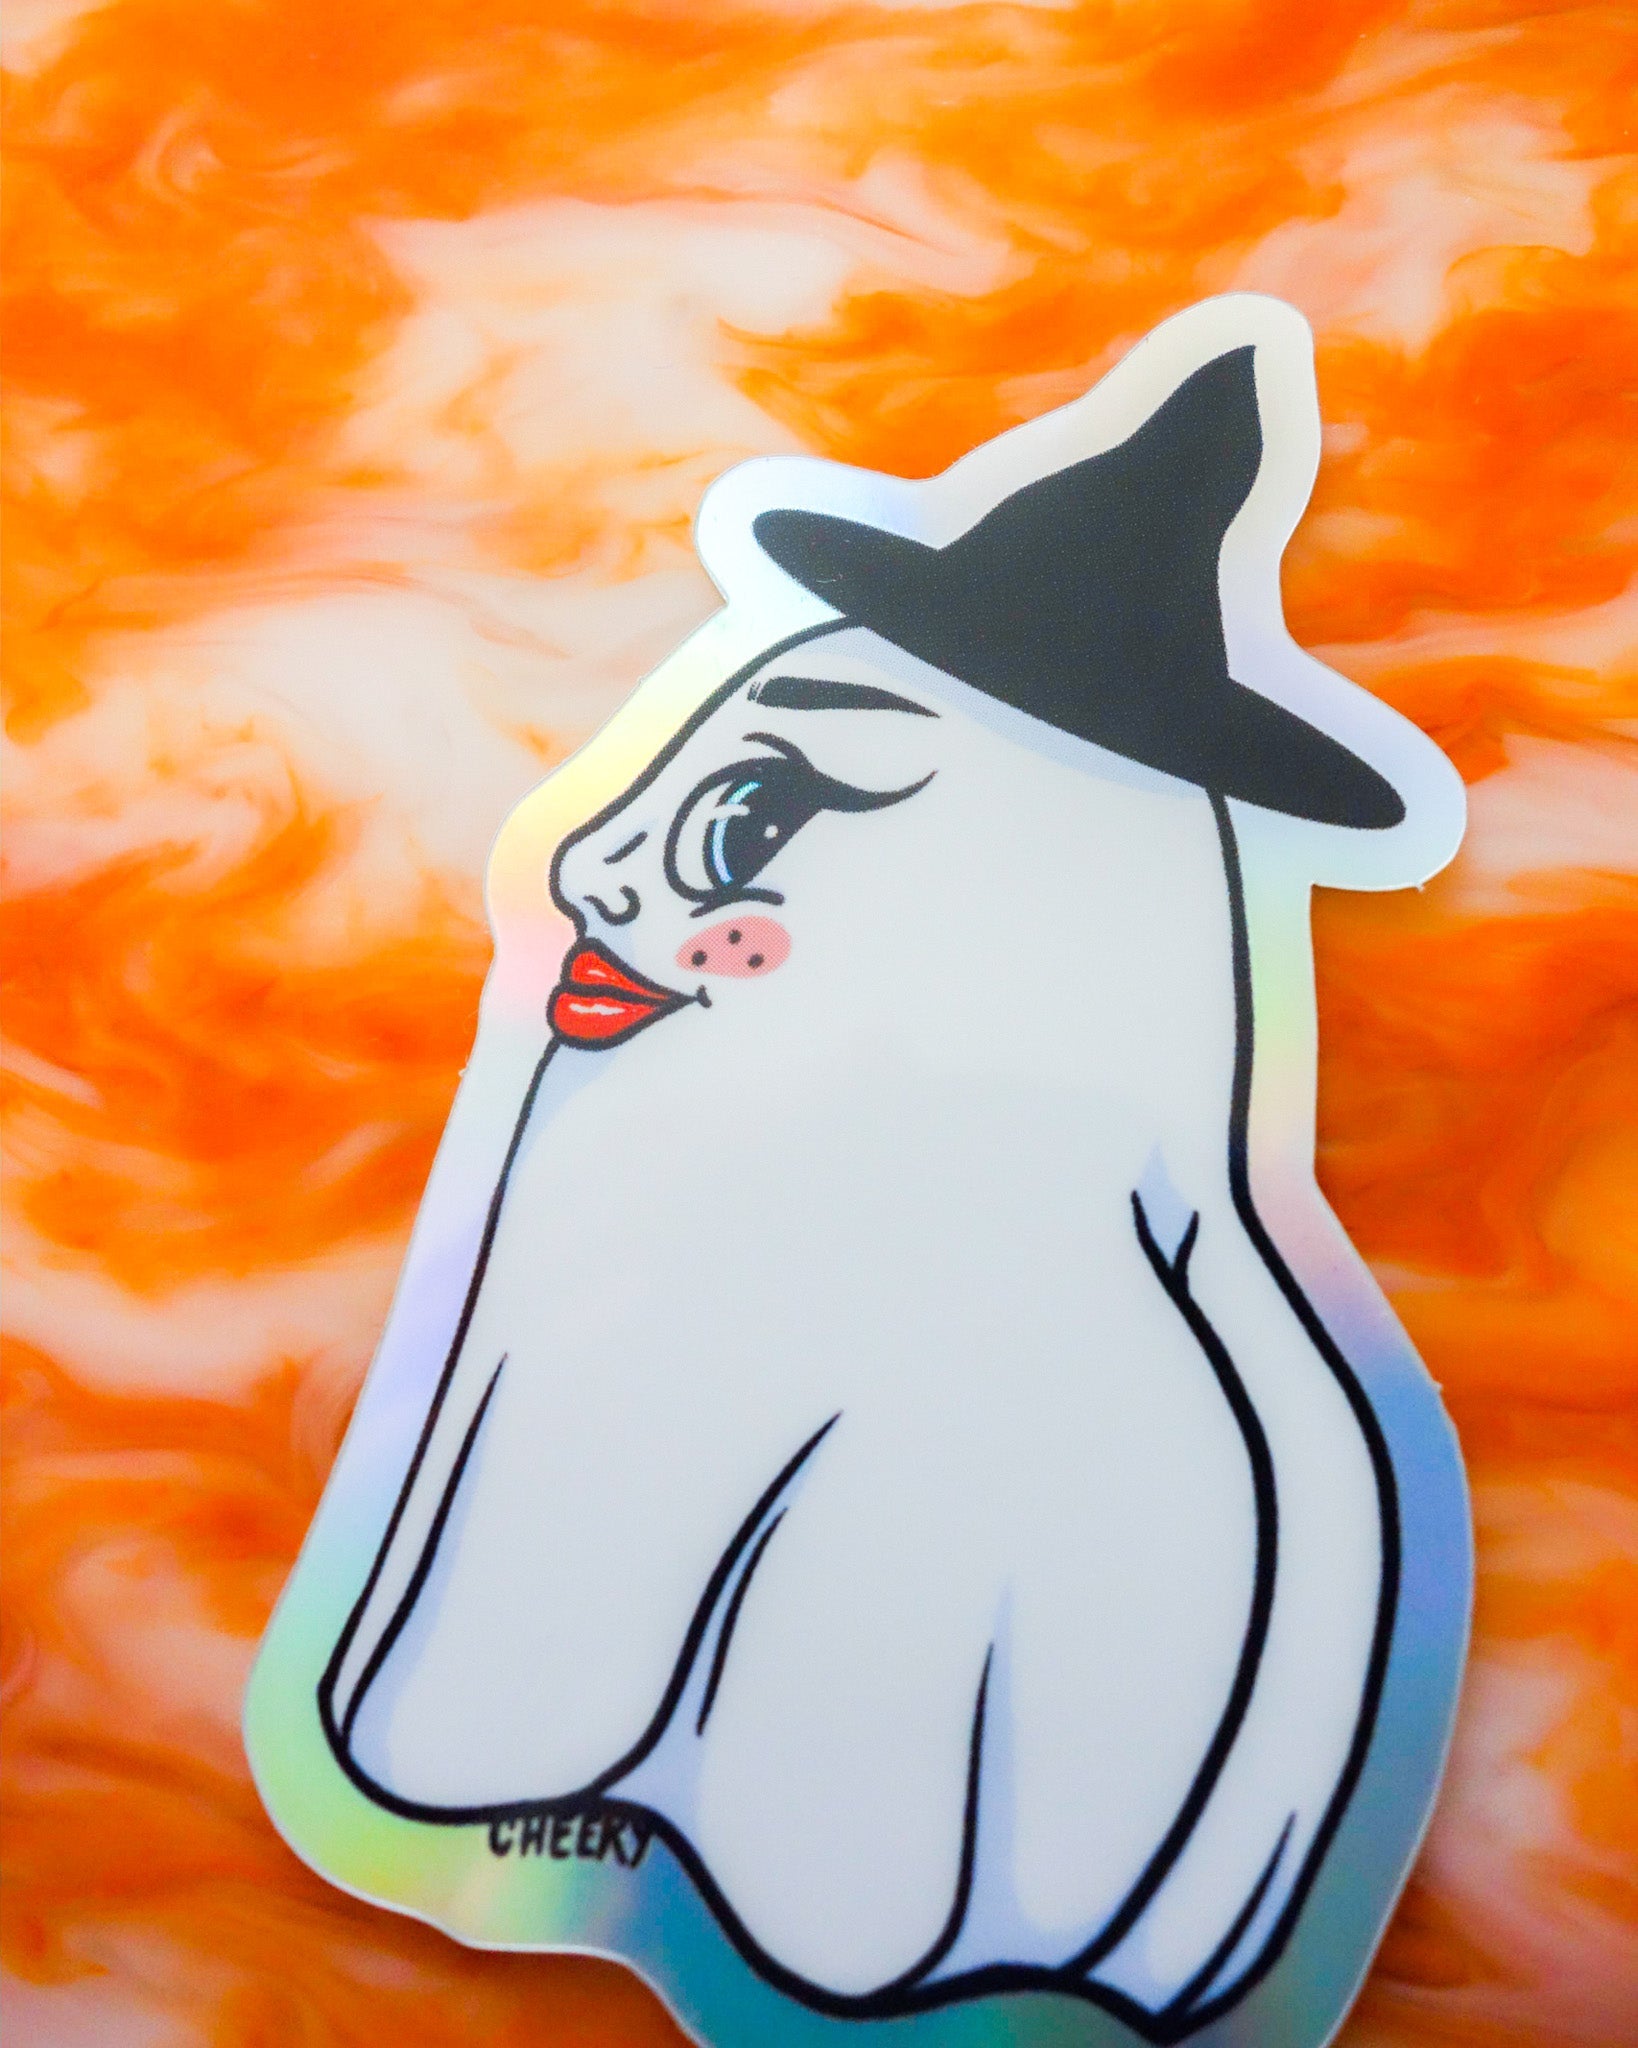 Spooky Holo Ghost Vinyl Sticker - Cheeky Art Studio